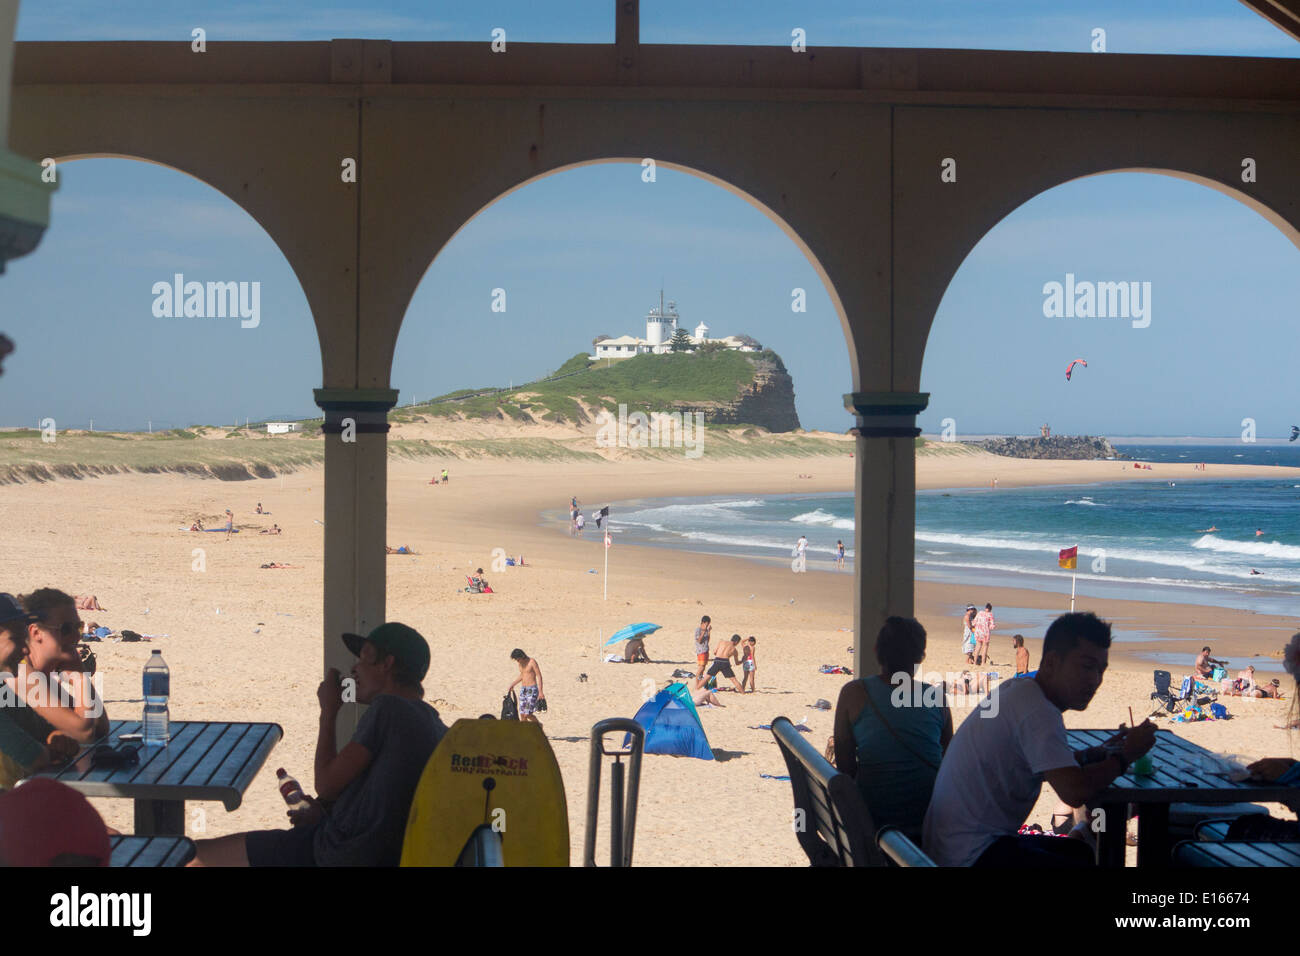 Plage de Nobbys Head et vu à travers arcades de pavilion et café avec des gens assis à des tables Newcastle Australie Nouvelle Galles du Sud Banque D'Images